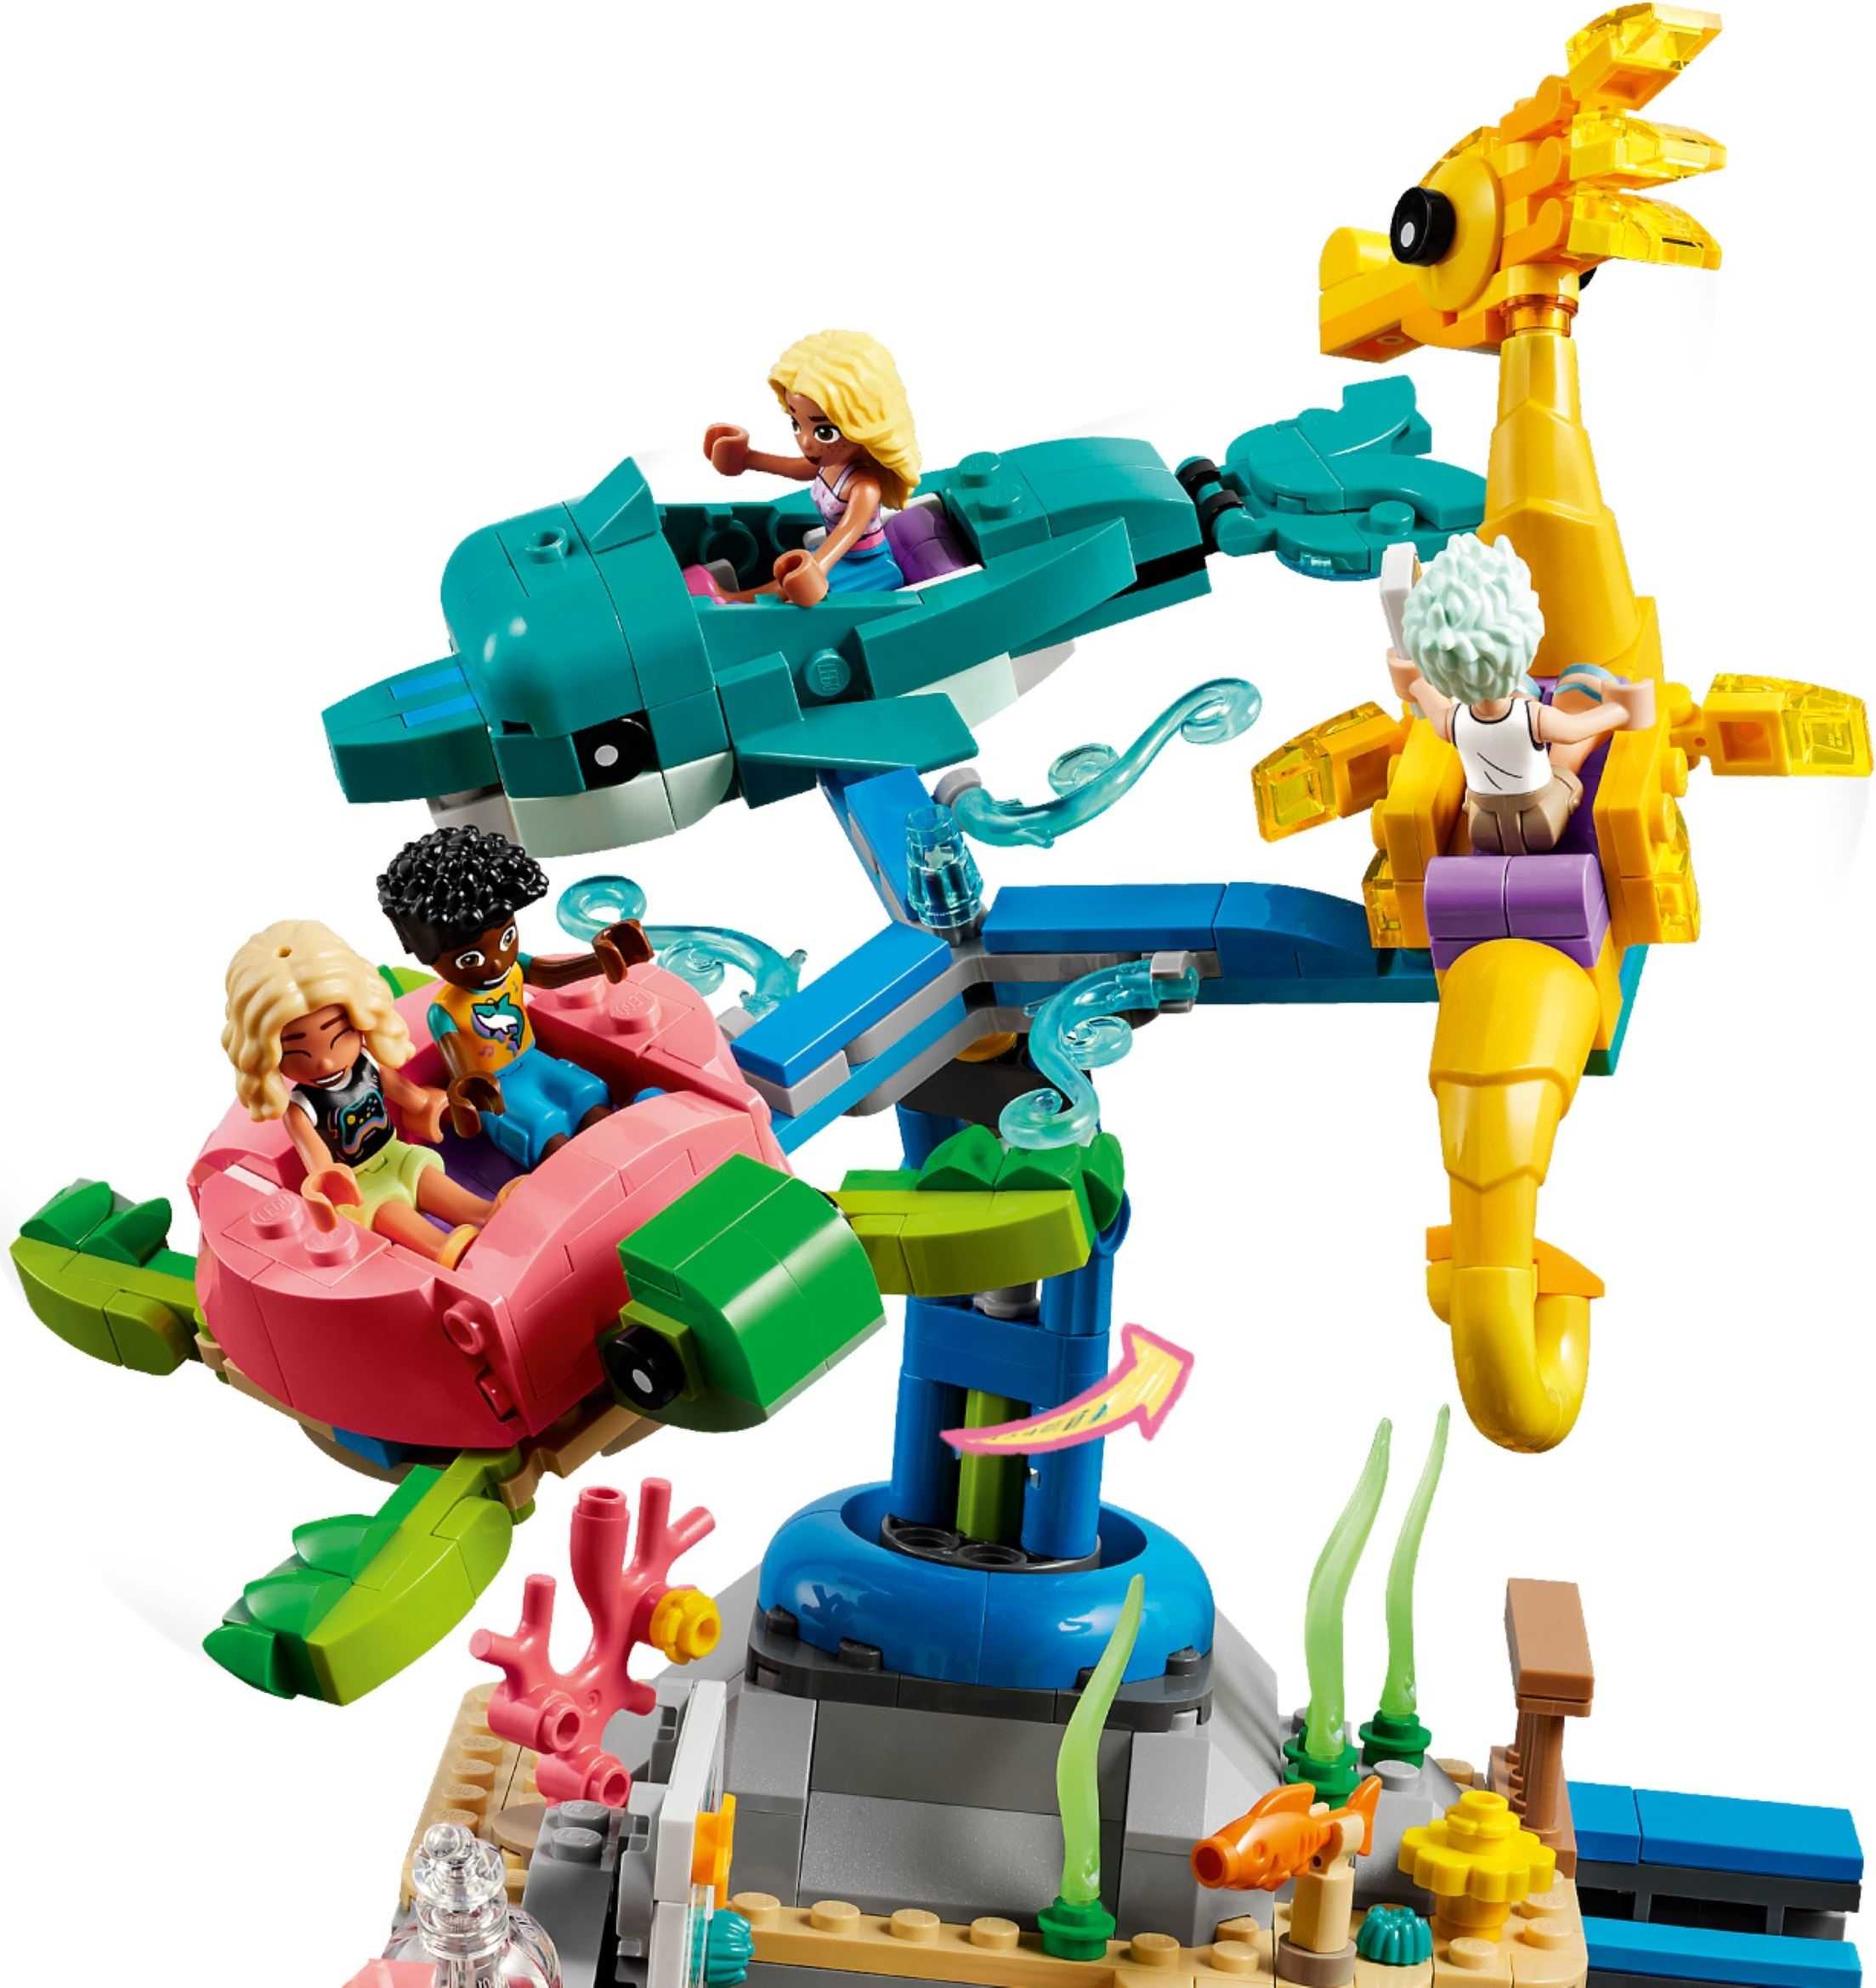 【電積系@北投】LEGO 41737 海灘遊樂園(3)-Friends